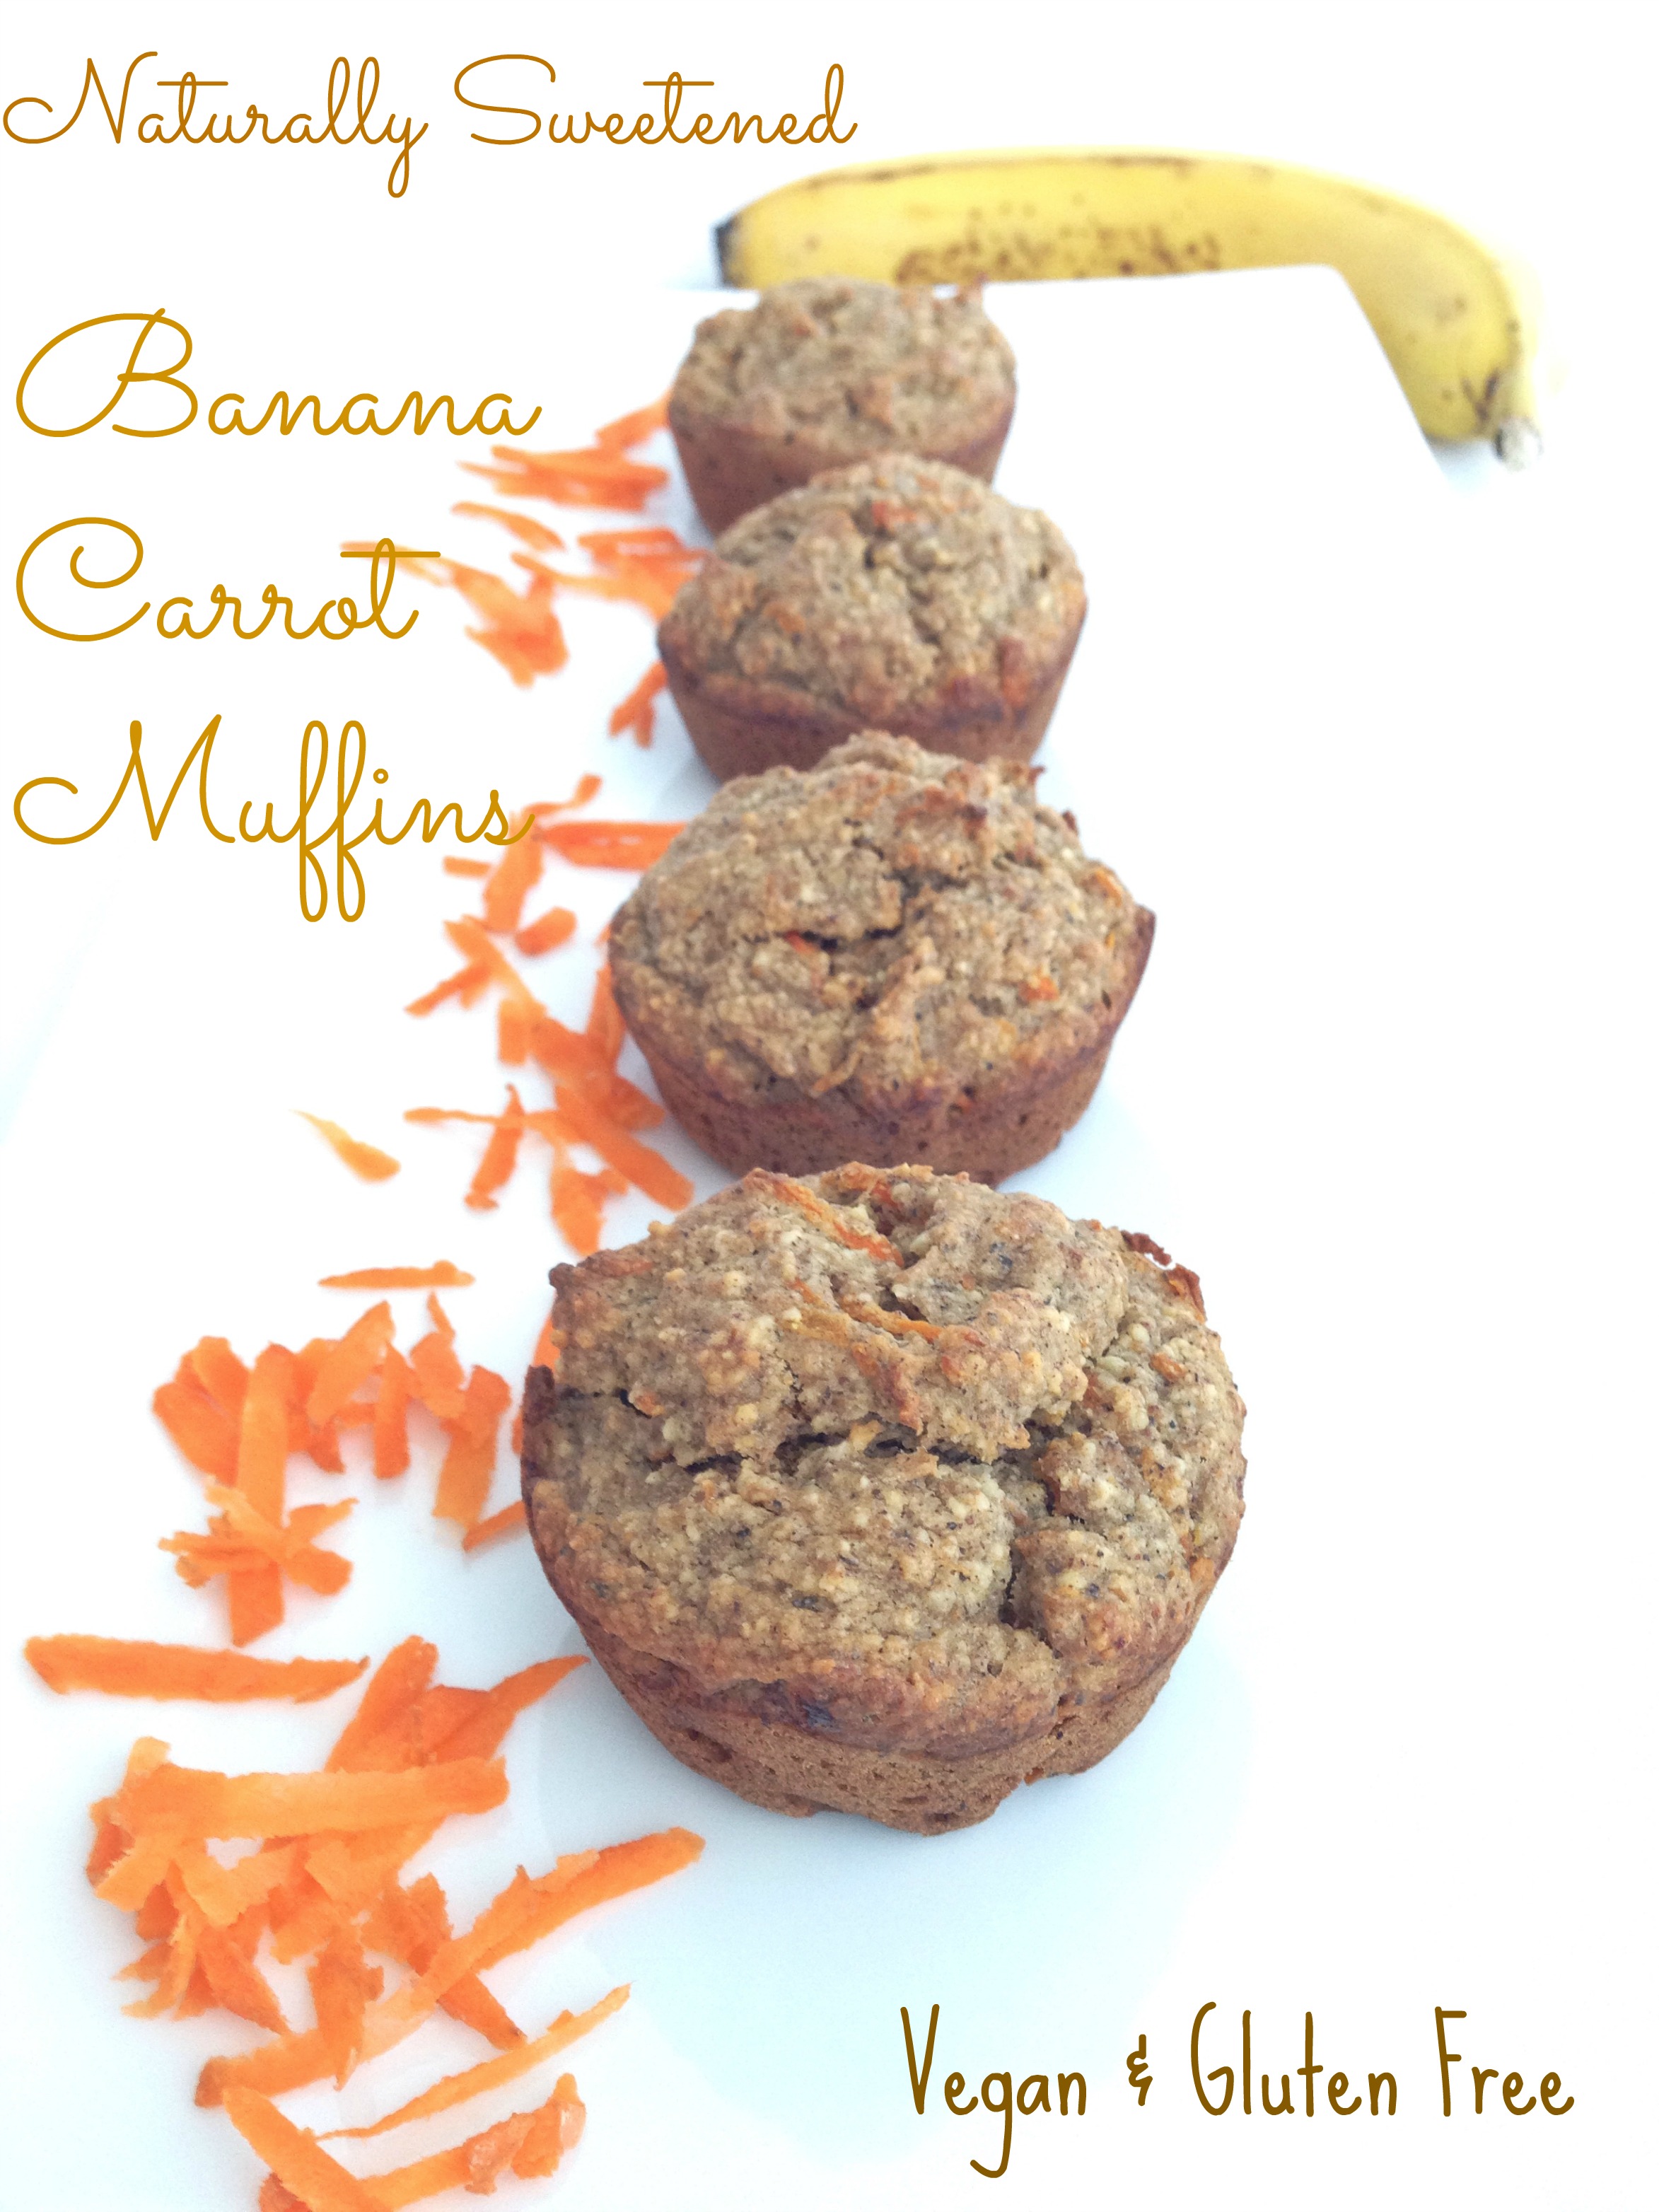 naturally sweetened banana carrot muffins gluten free and vegan brunch